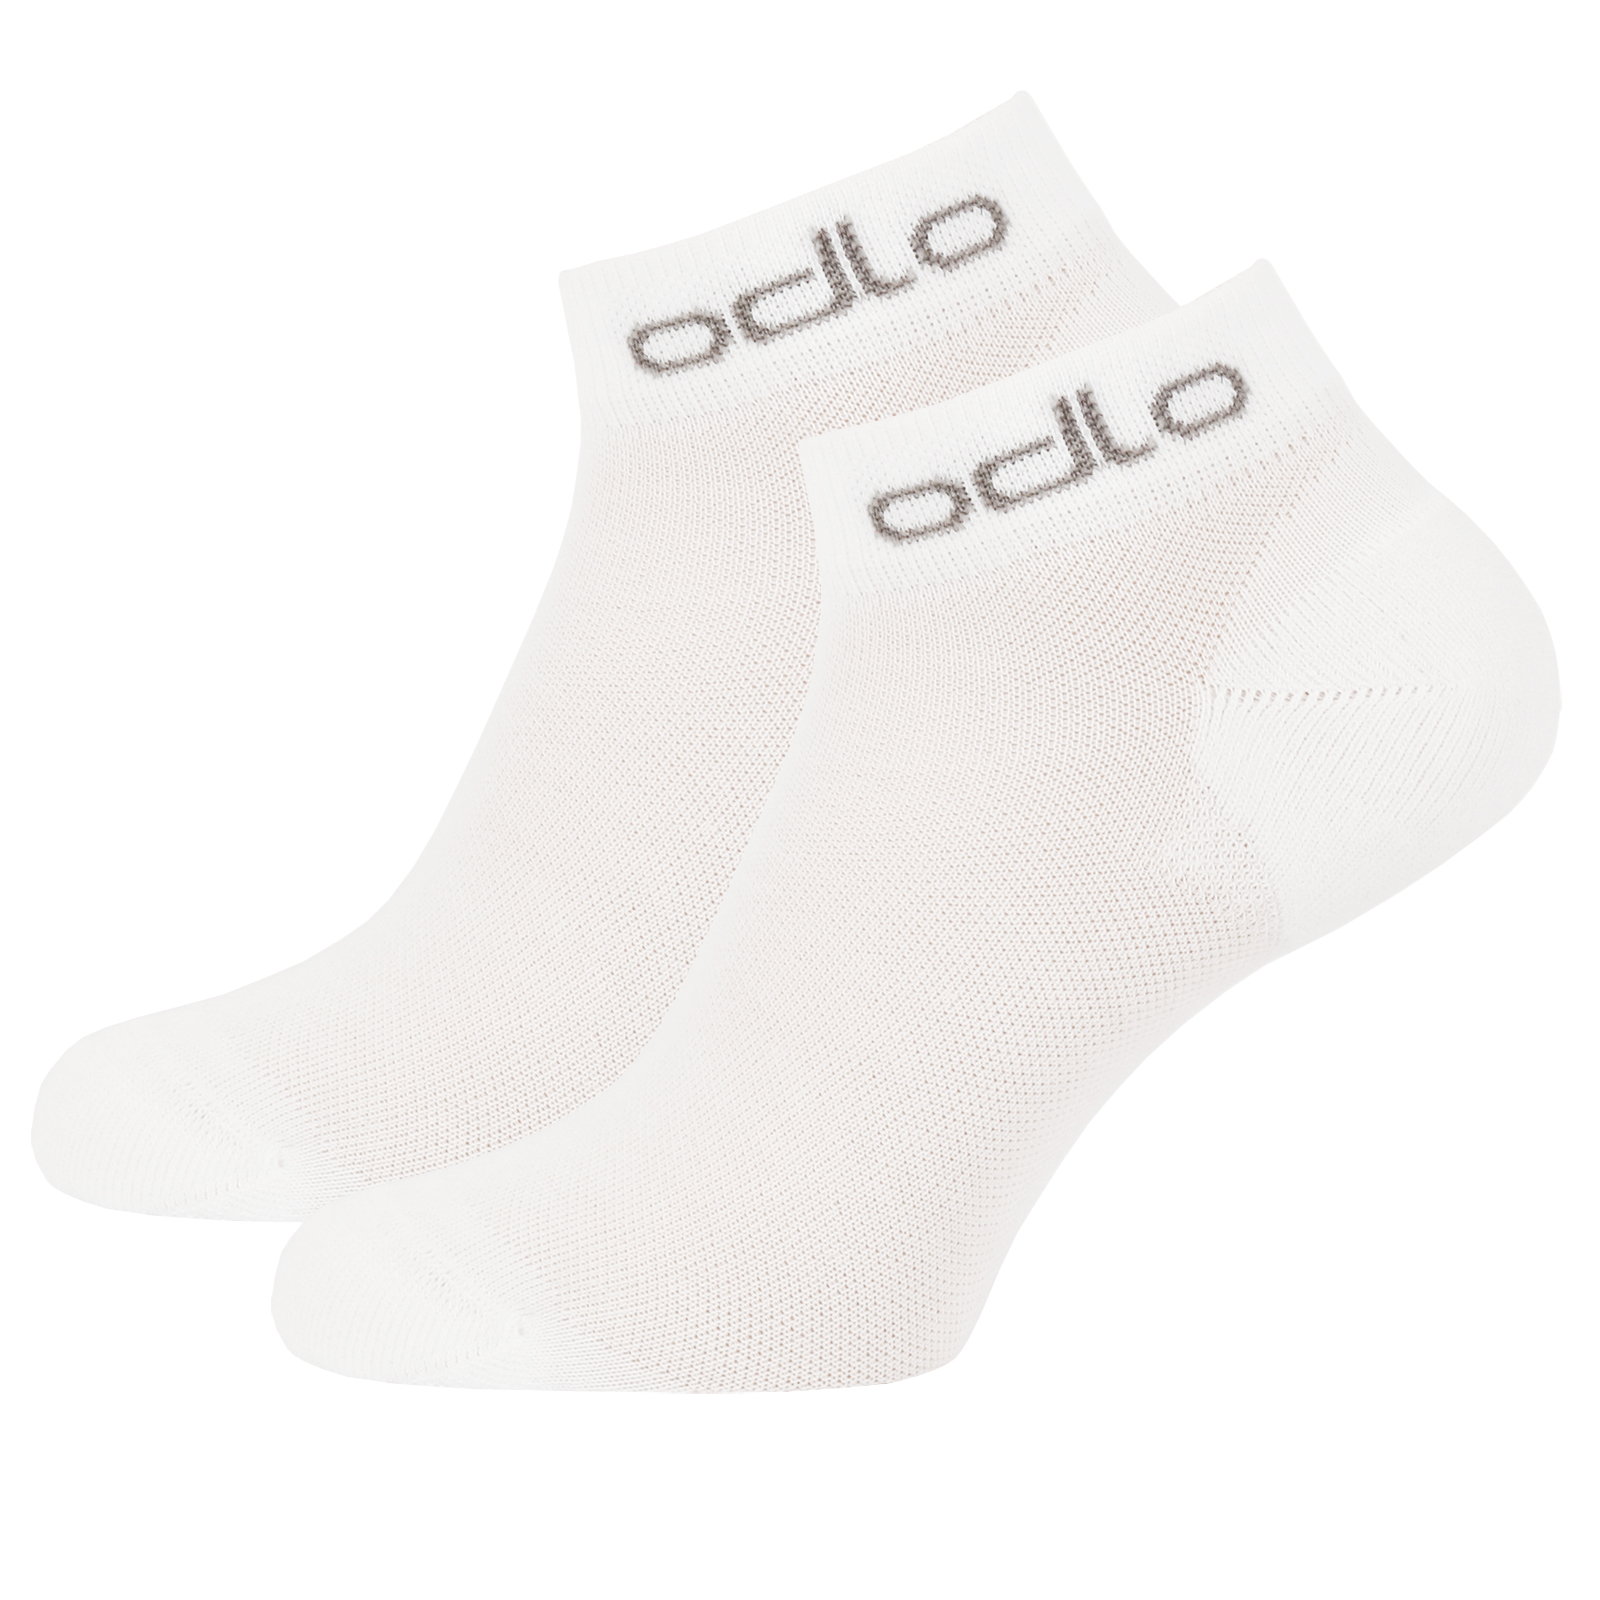 Produktbild von Odlo ACTIVE LOW Sneaker-Socken im Doppelpack - weiß